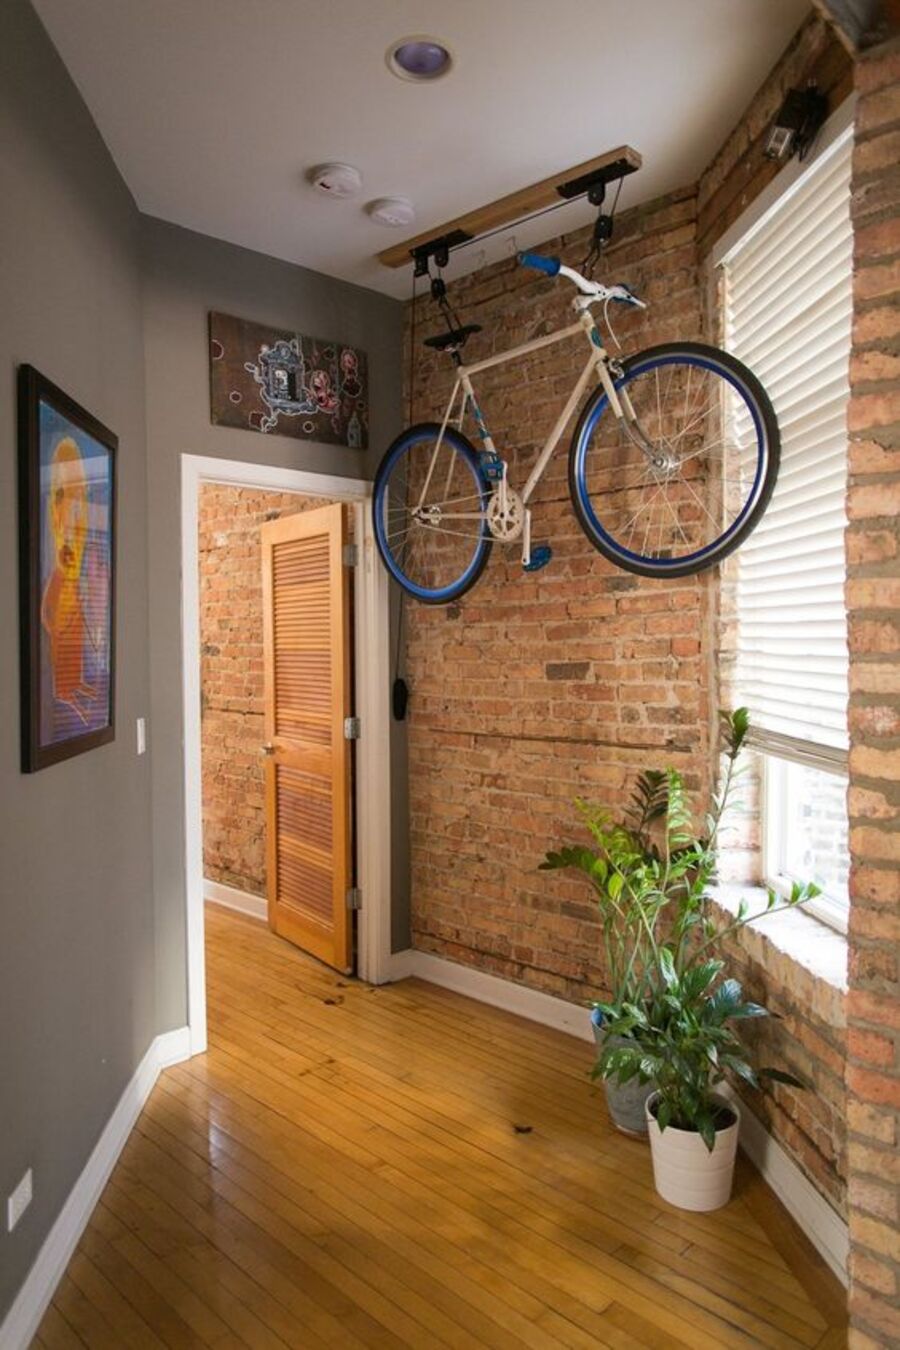 Pasillo de piso de madera, pared izquierda gris, pared derecha de ladrillos y techo blanco. Desde este último cuelga una bicicleta desde una estructura con sistema de poleas. Hacia el fondo se ubica una puerta abierta de madera.